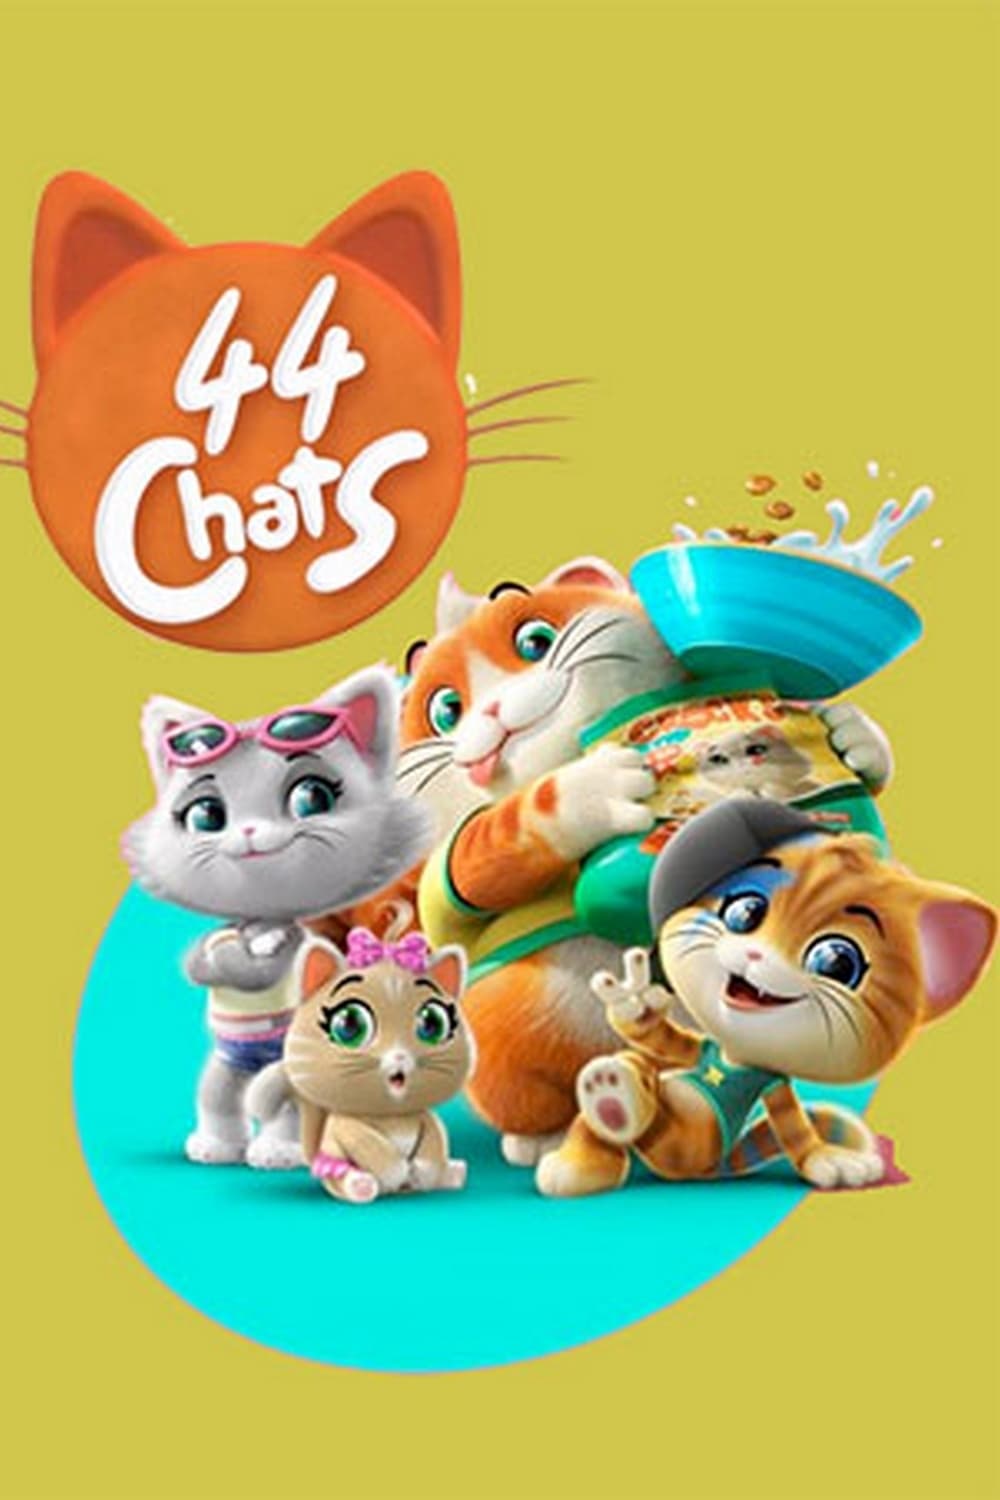 Les saisons de 44 chats sont-elles disponibles sur Netflix ou autre ?